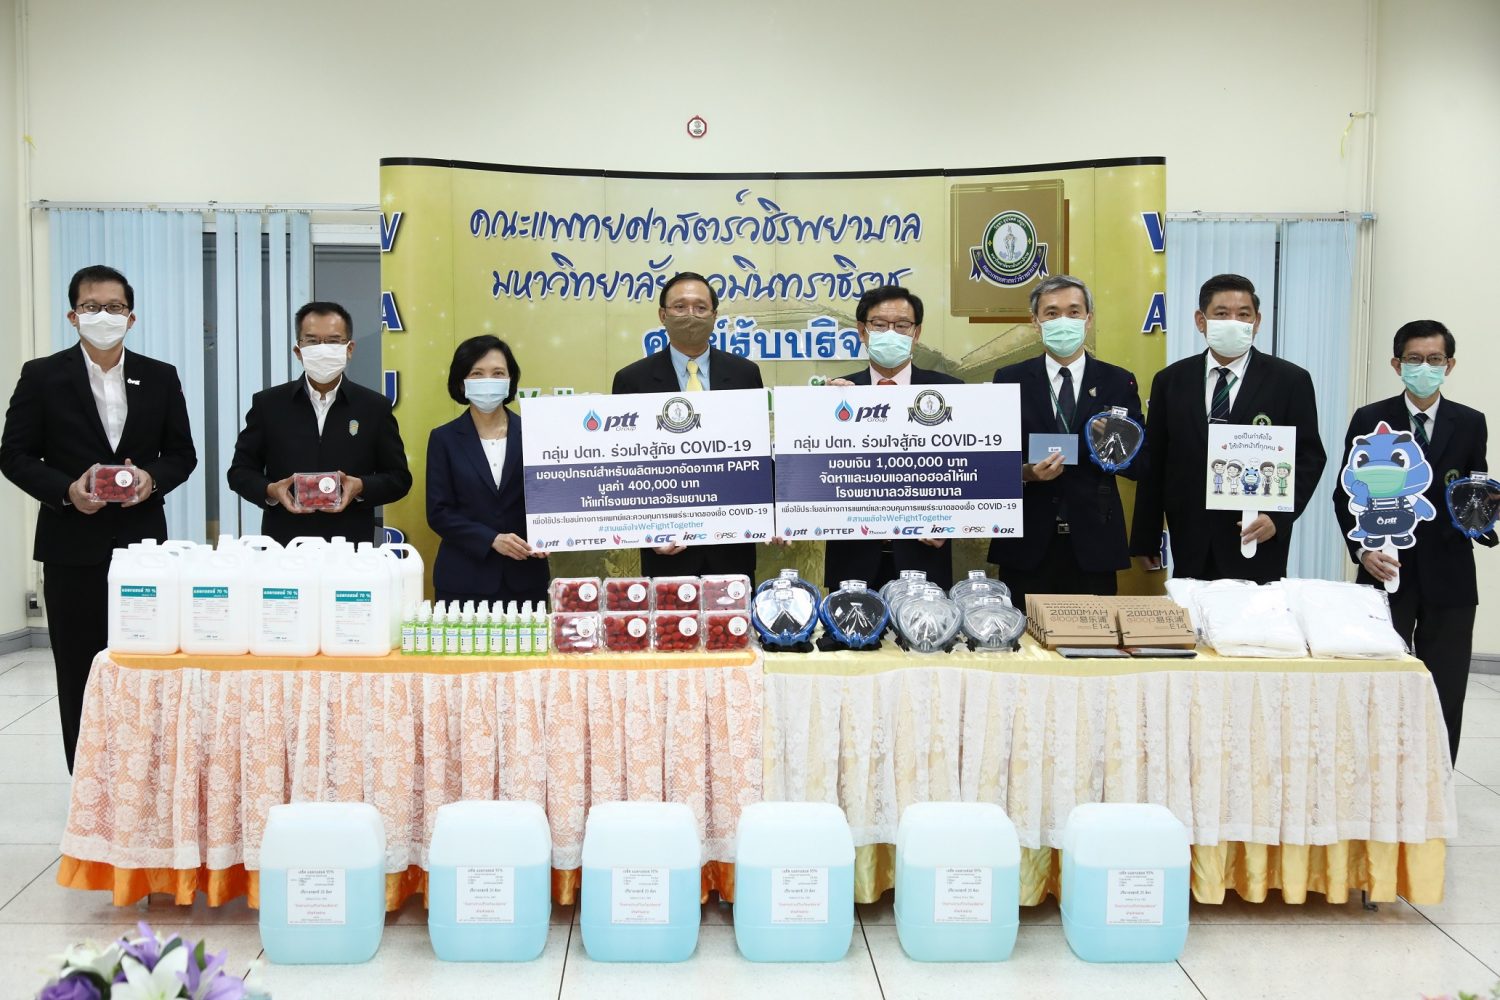 ปตท. ส่งเสริมการผลิตนวัตกรรมโดยคนไทย เพื่อสู้ภัย COVID-19 บริจาคอุปกรณ์ผลิตหมวกอัดอากาศ PAPR และแอลกอฮอล์ ให้แก่ รพ. วชิรพยาบาล